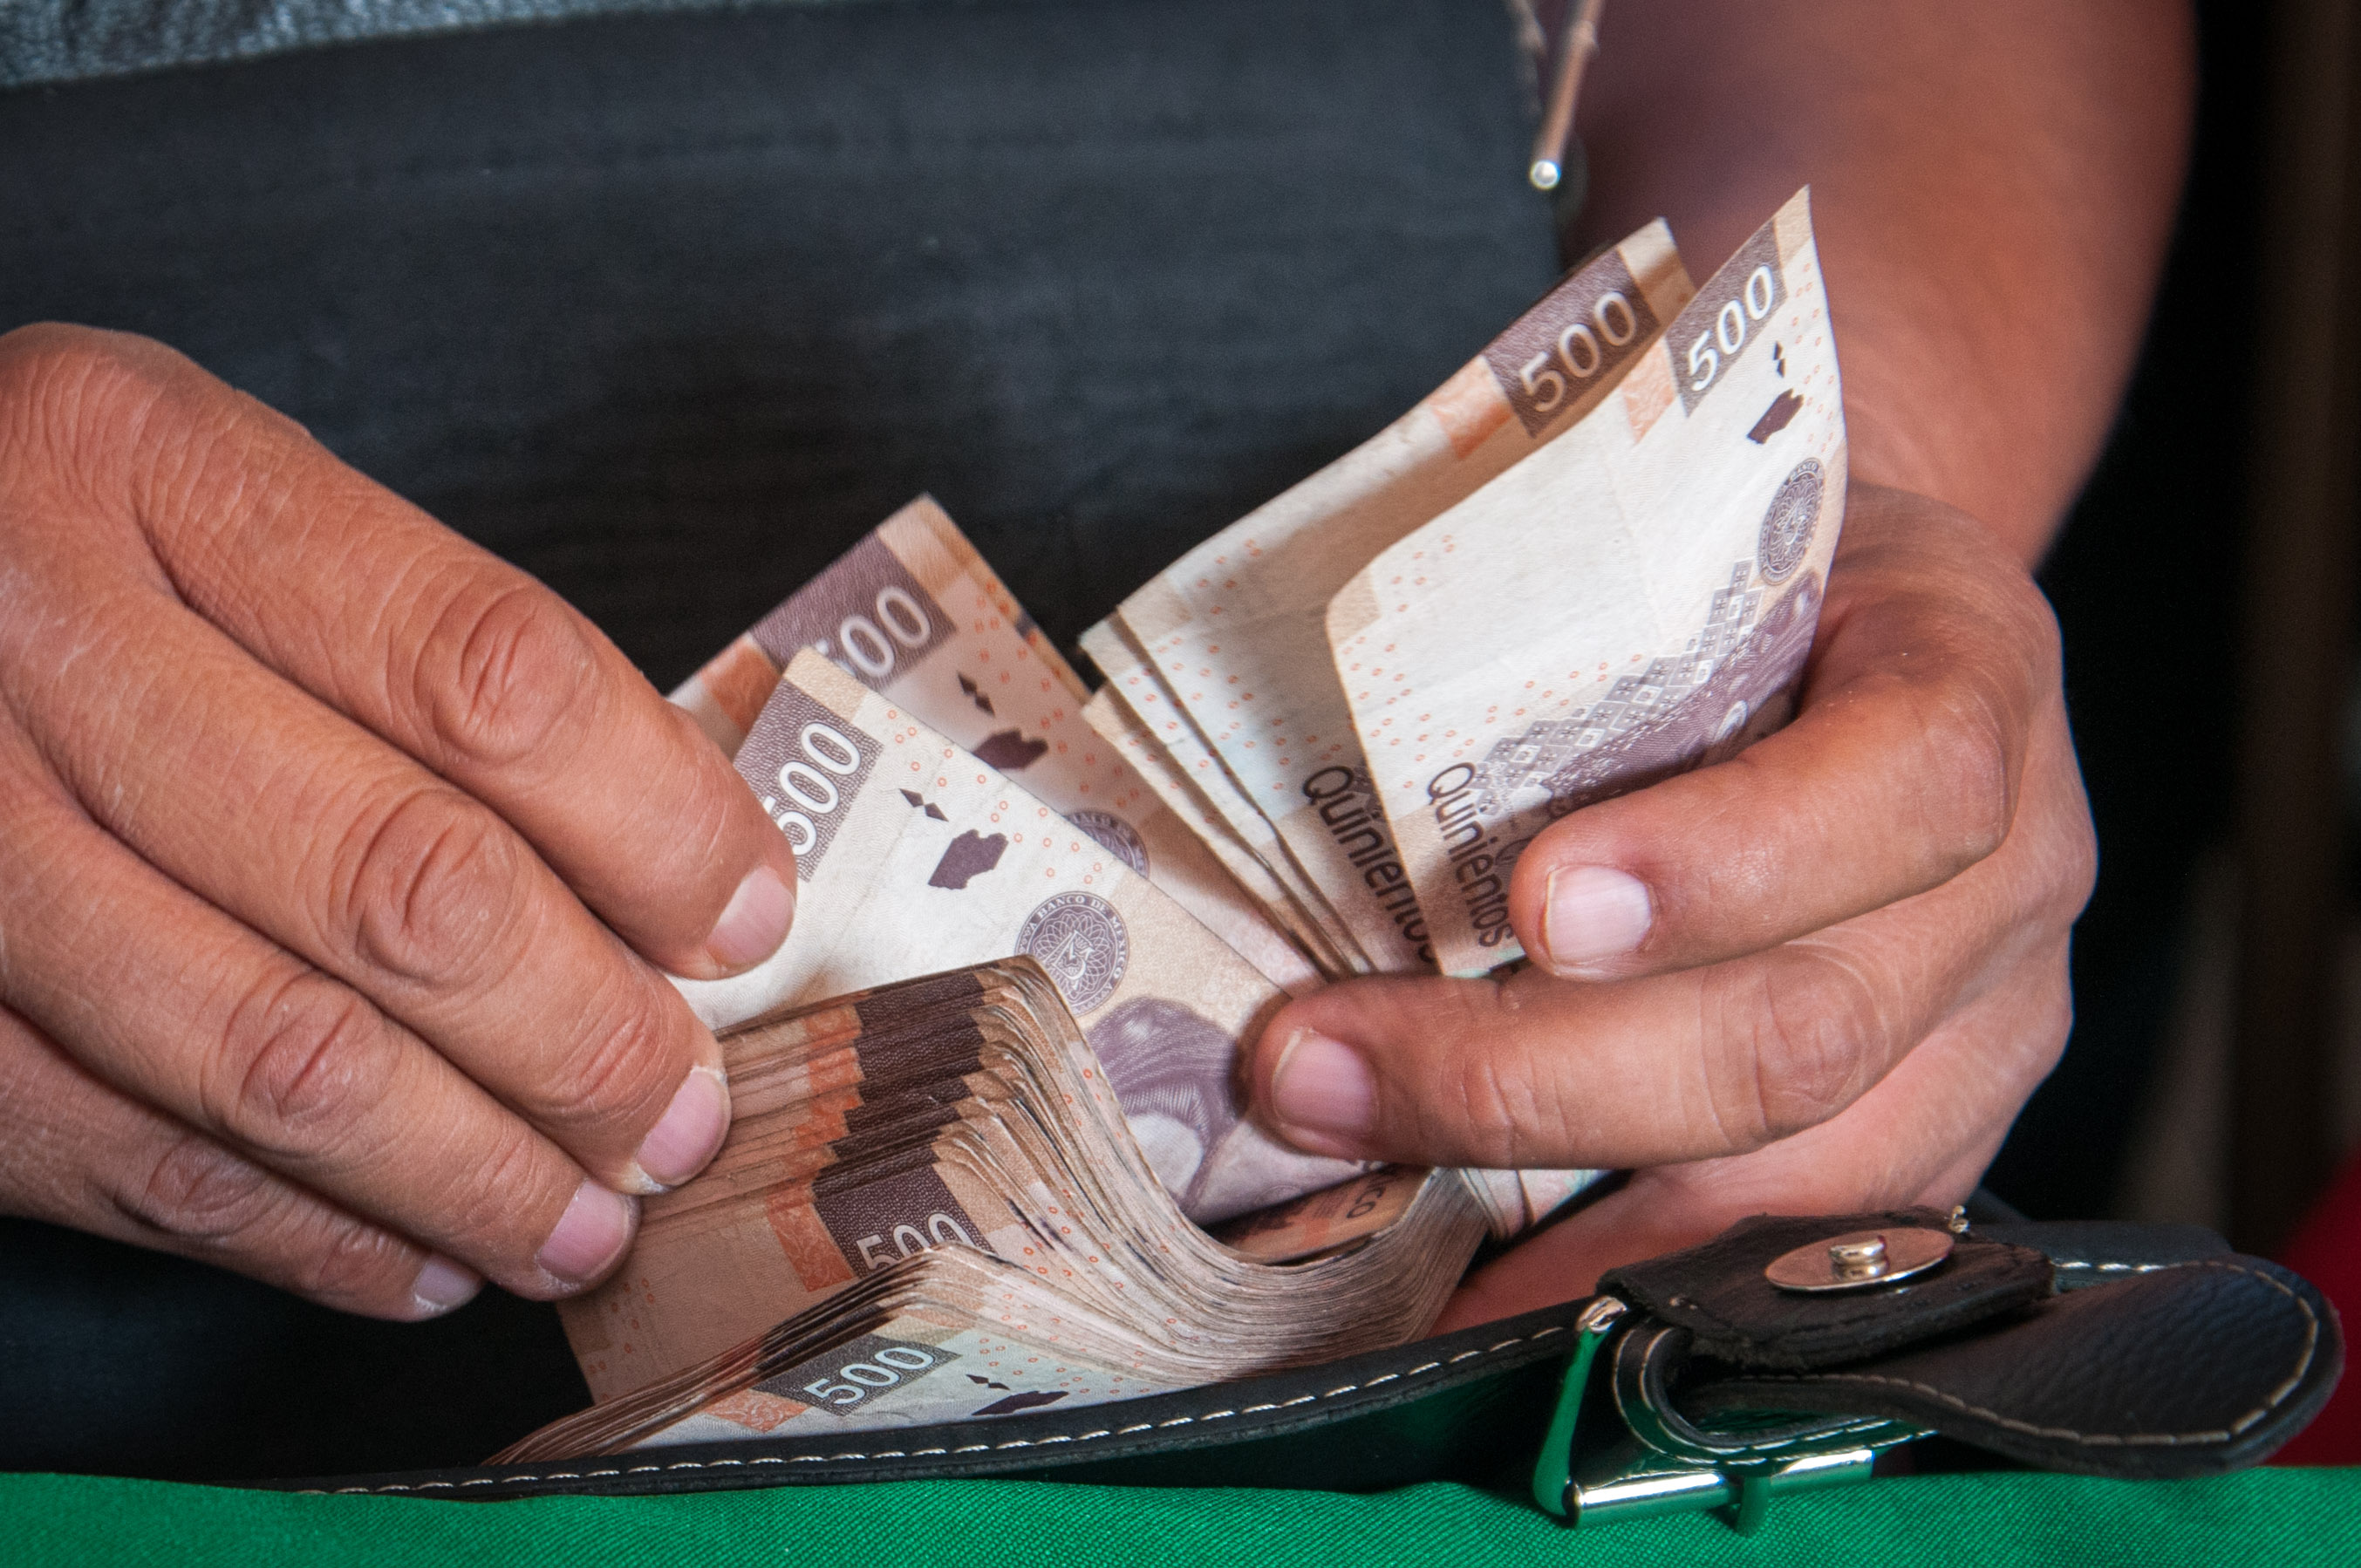 Foto: Una persona cuenta varios billetes de 500 pesos, 6 marzo 2019